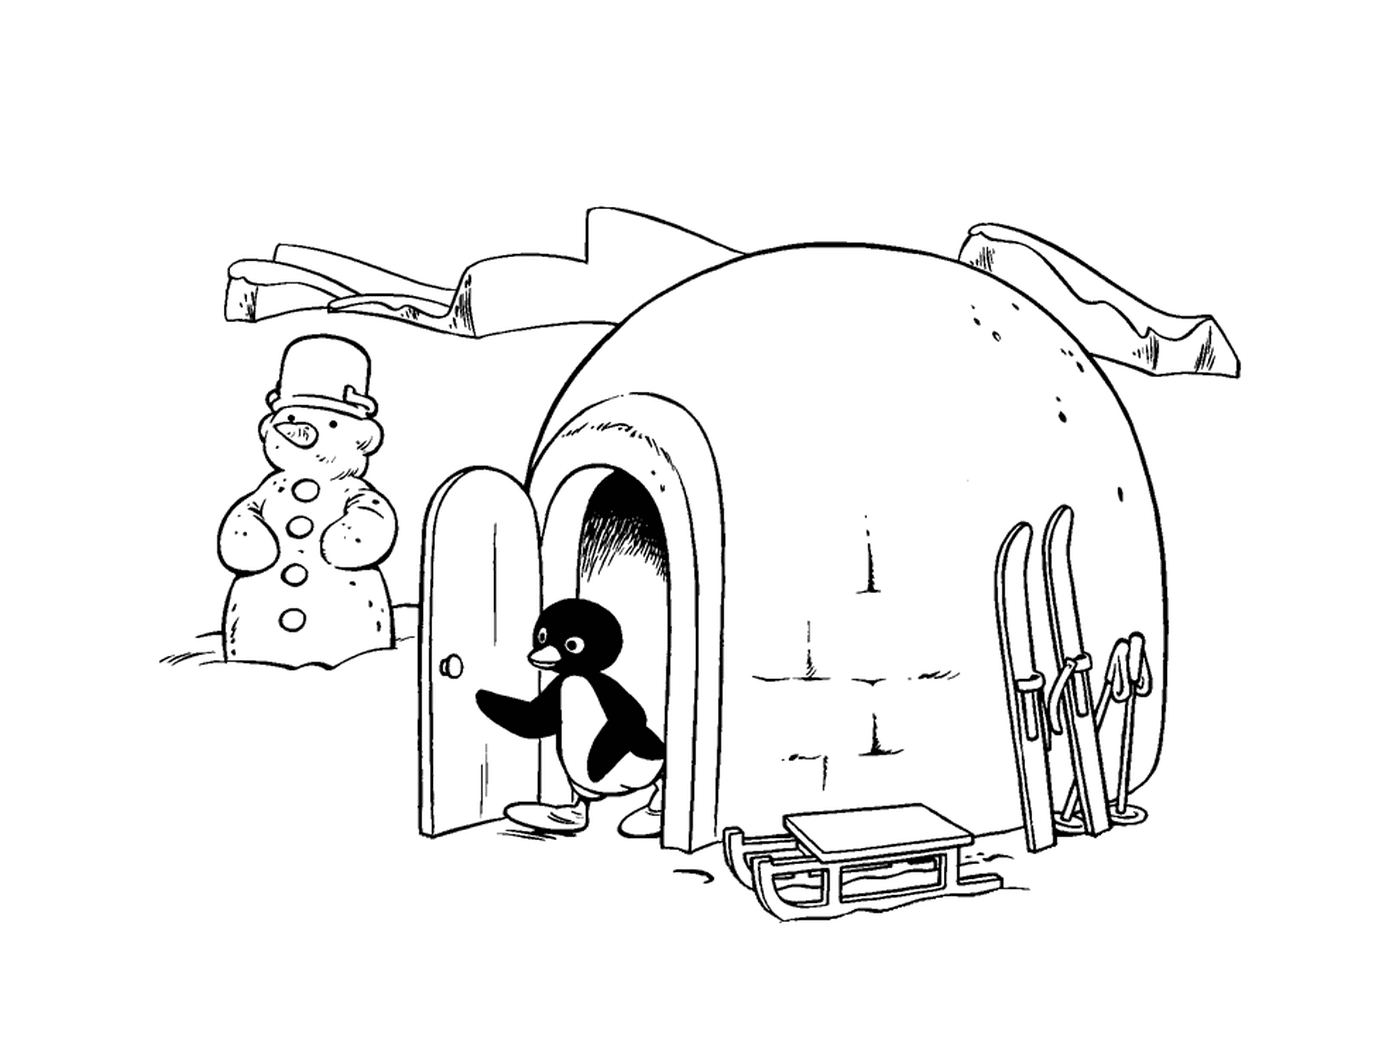  Pingu saliendo de su iglú 